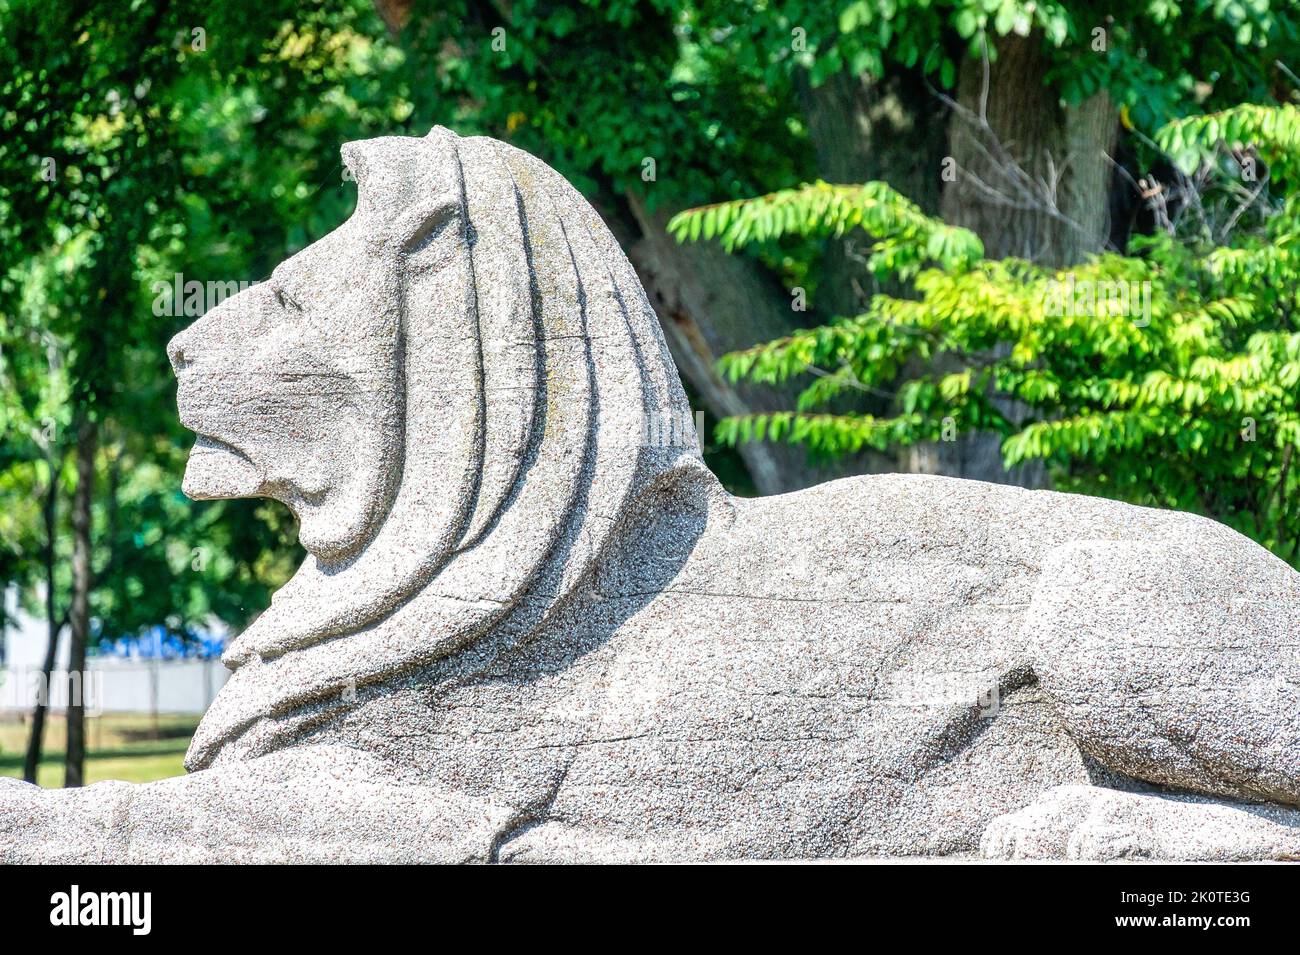 Stone Lion sculpture, édifice du gouvernement de l'Ontario dans Exhibition place, Toronto, Canada Banque D'Images